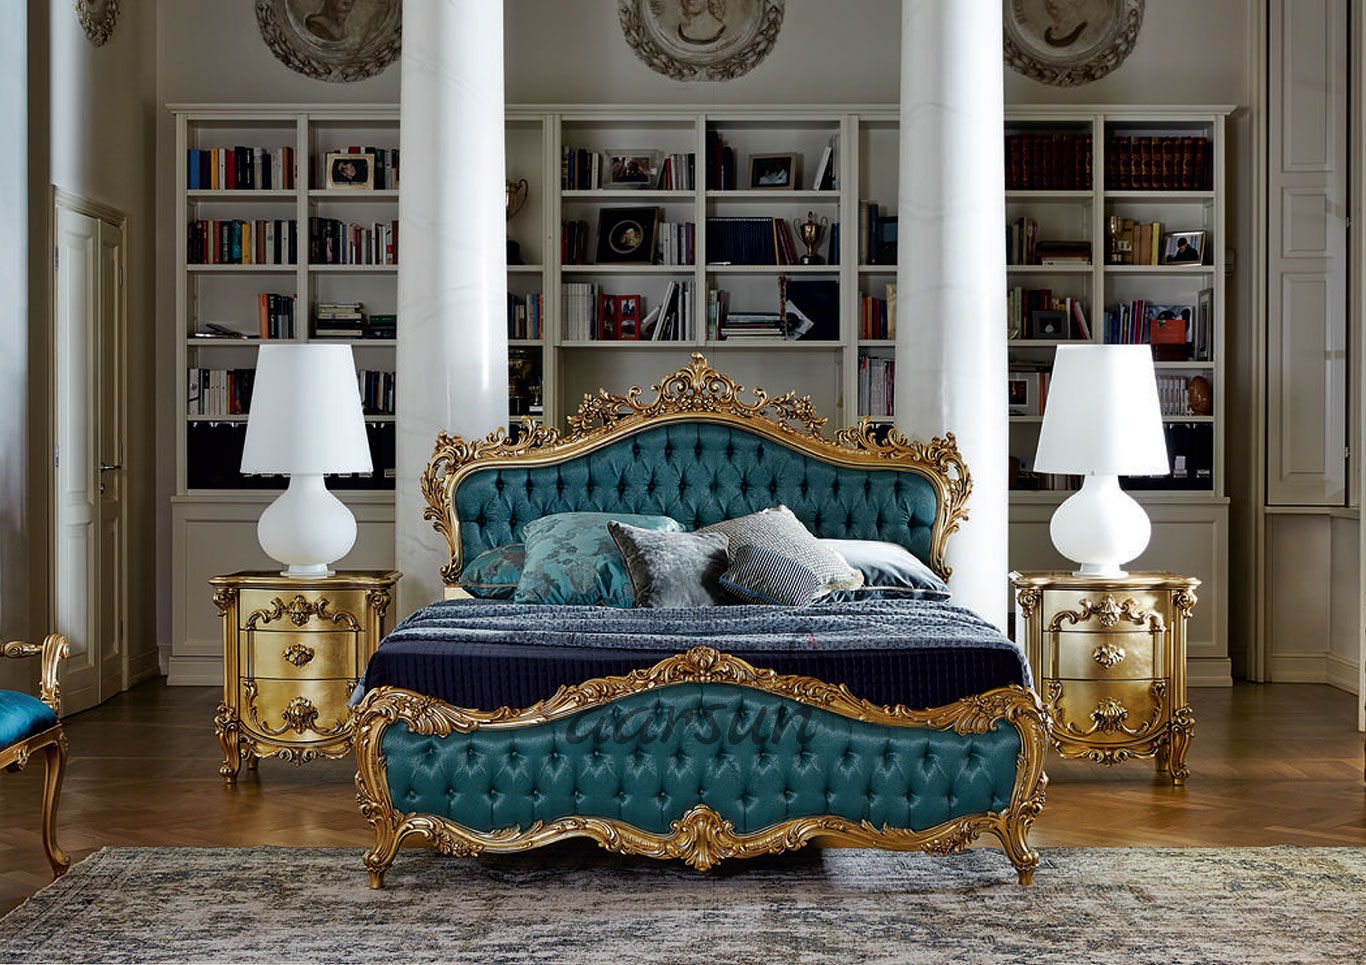 Luxury Bedroom Furniture Australia - Homecare24